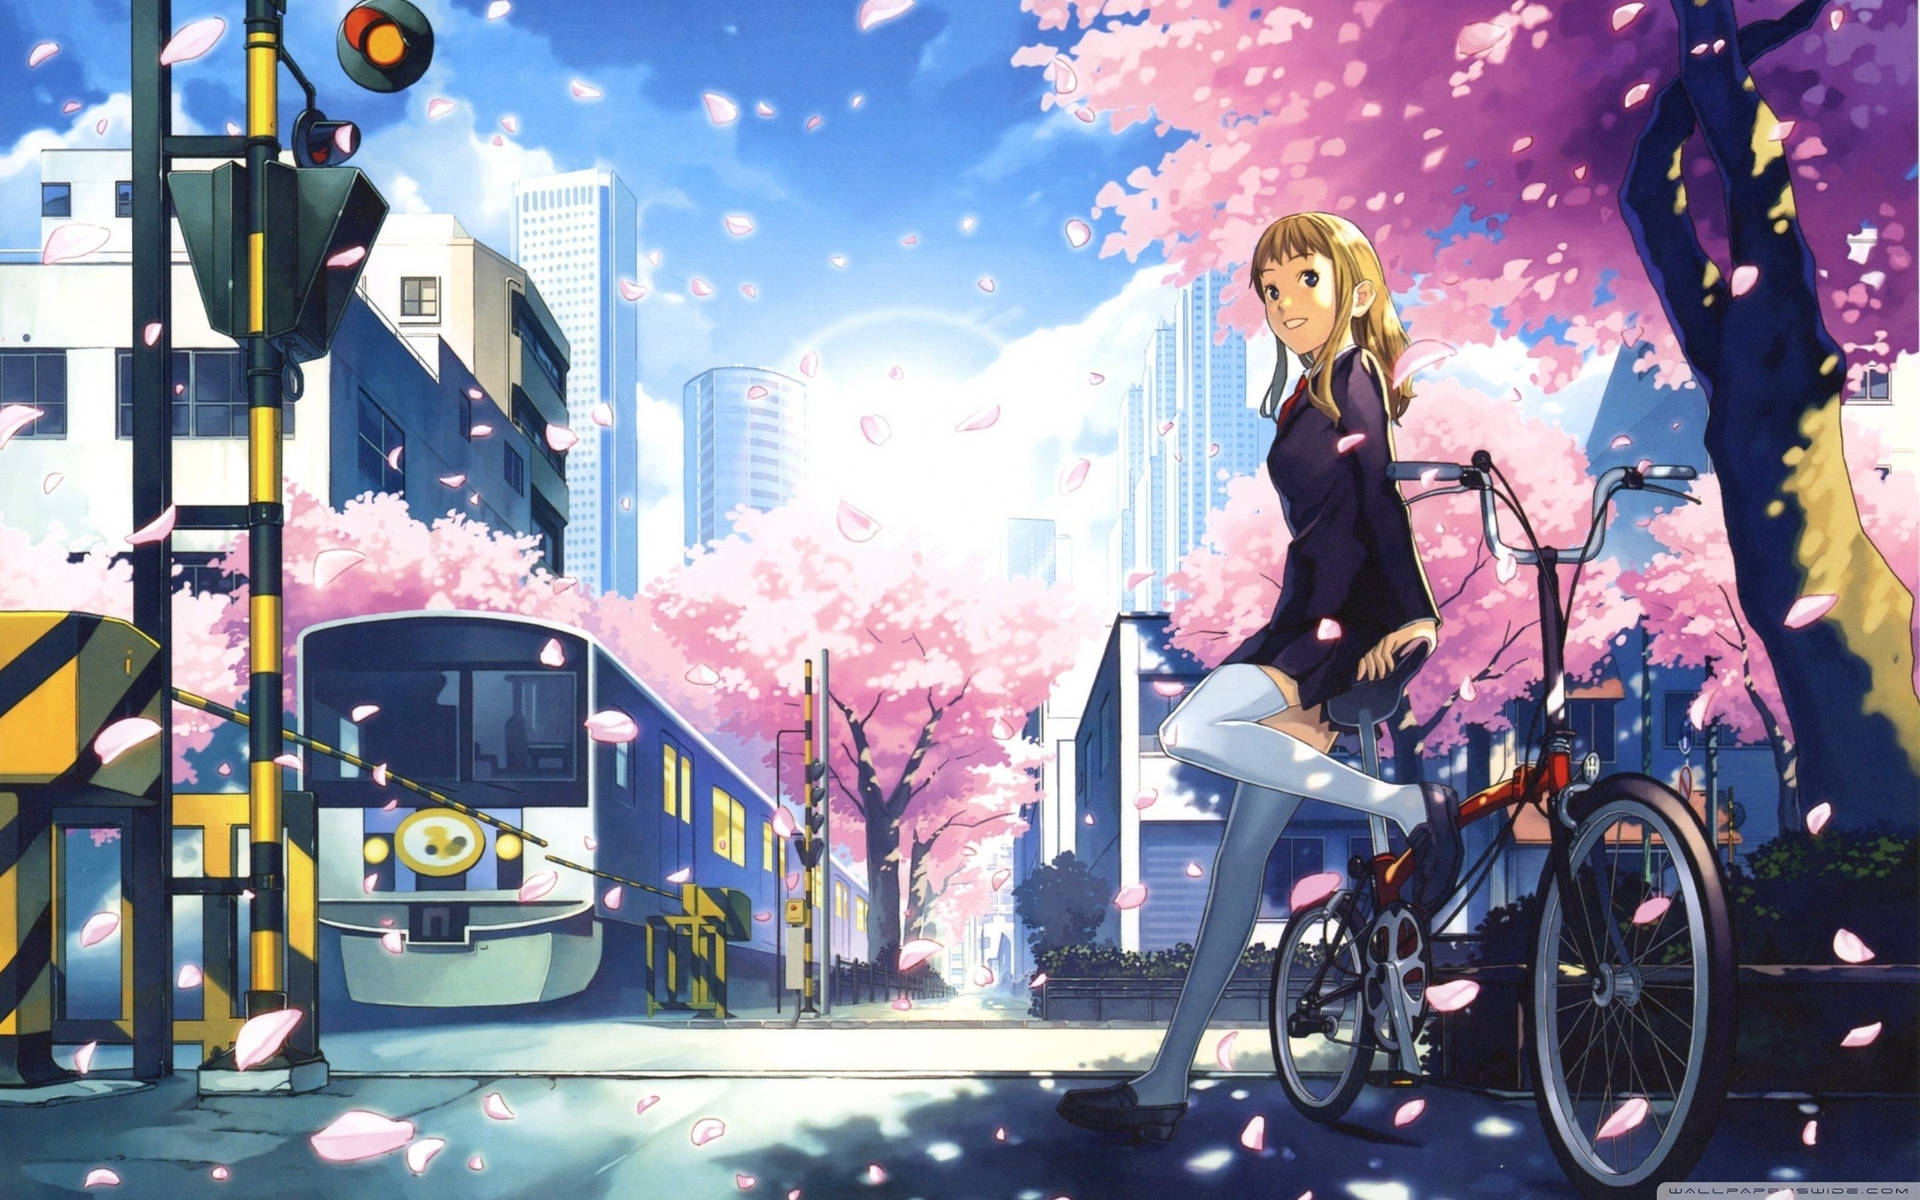 Khám phá vẻ đẹp phiêu lưu trong tranh phong cảnh anime đẹp như cổ tích